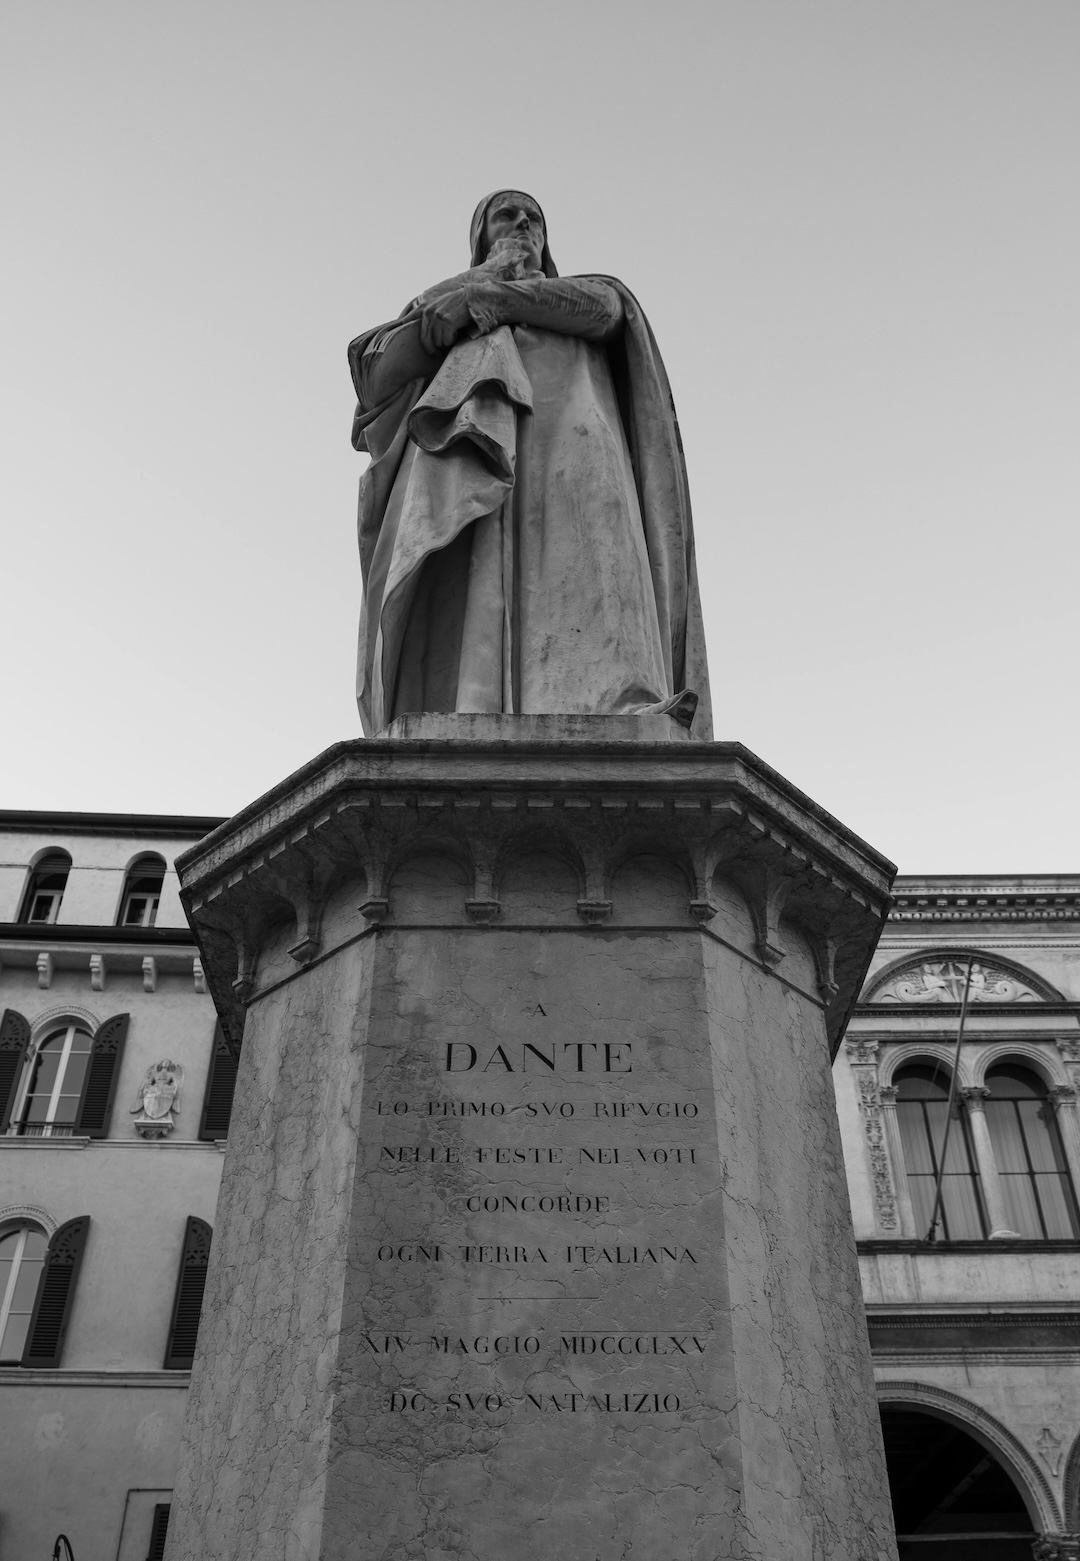 A Statue of Dante